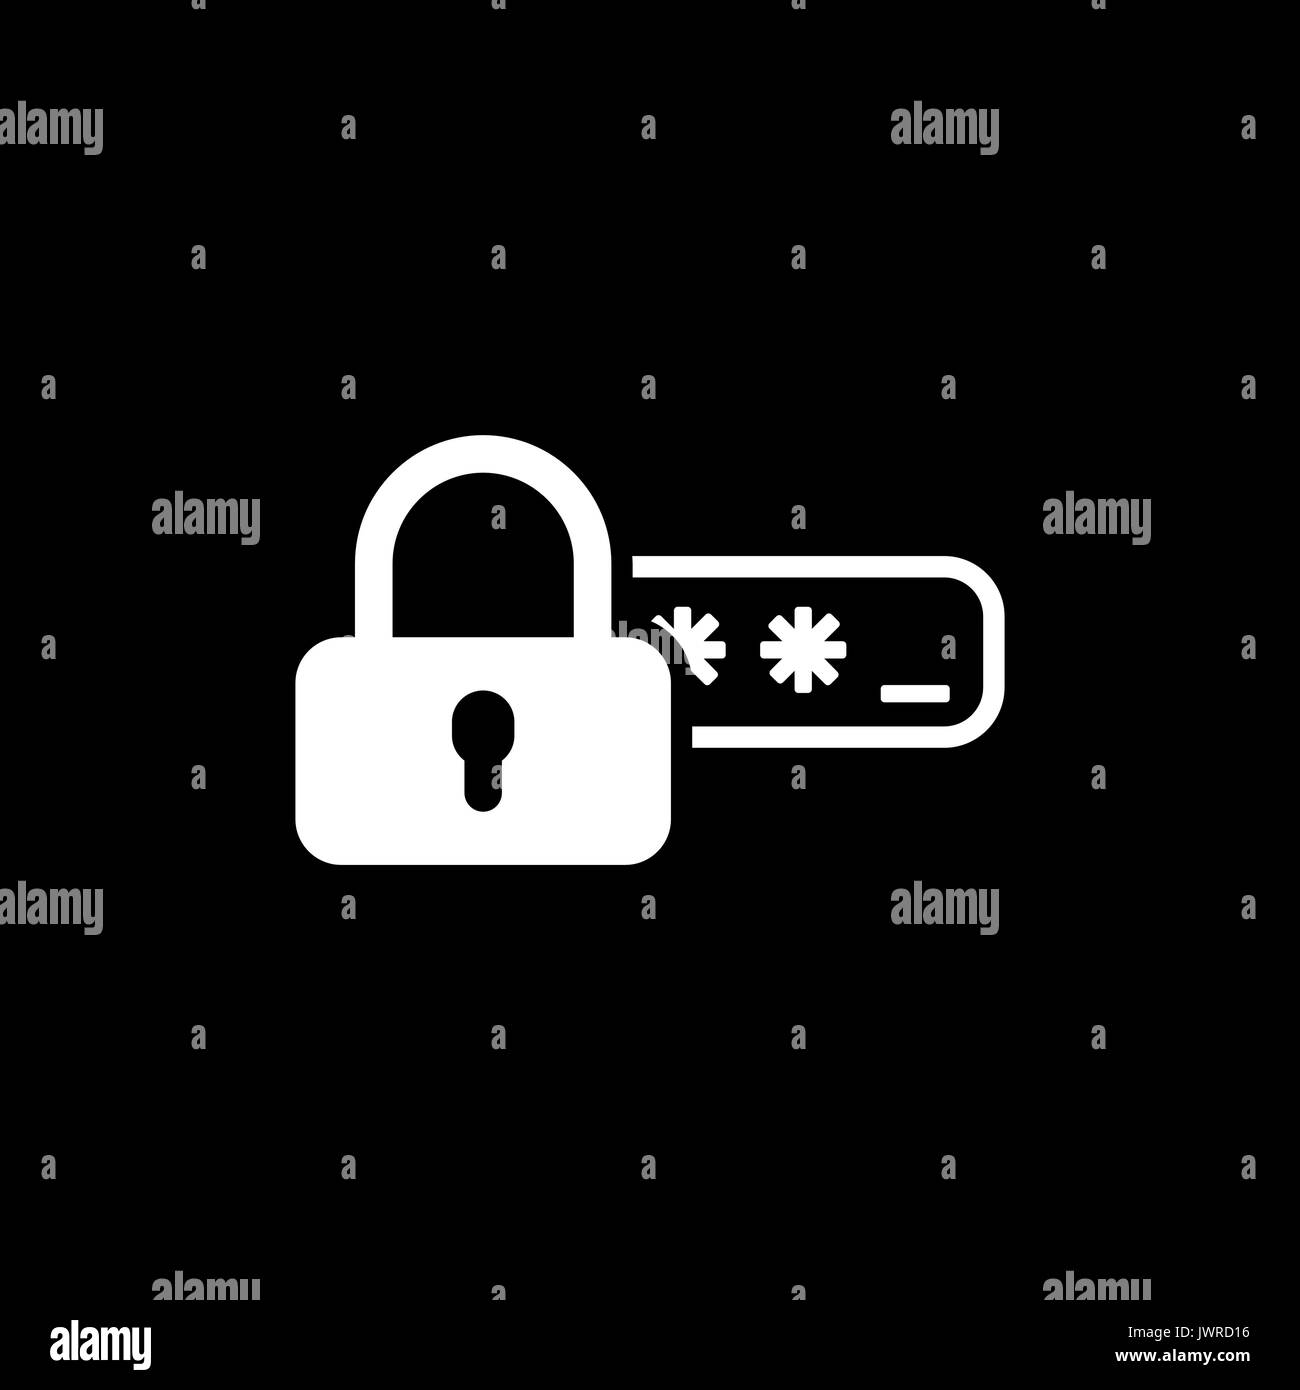 Accesso di sicurezza e protezione tramite password e la relativa icona. Illustrazione Vettoriale